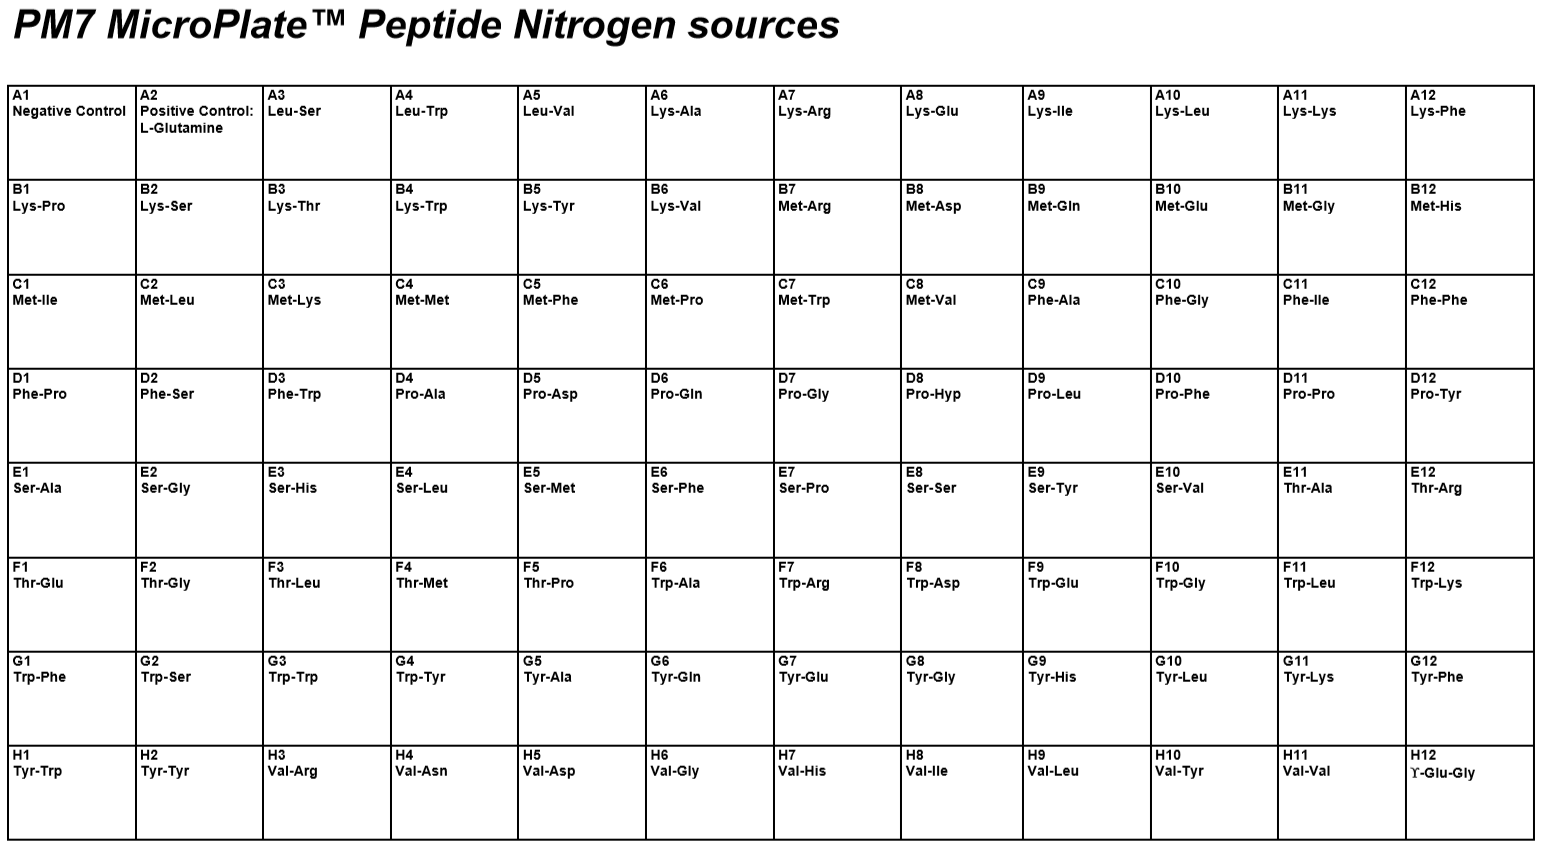 PM7 Peptide Nitrigen Sources.PNG